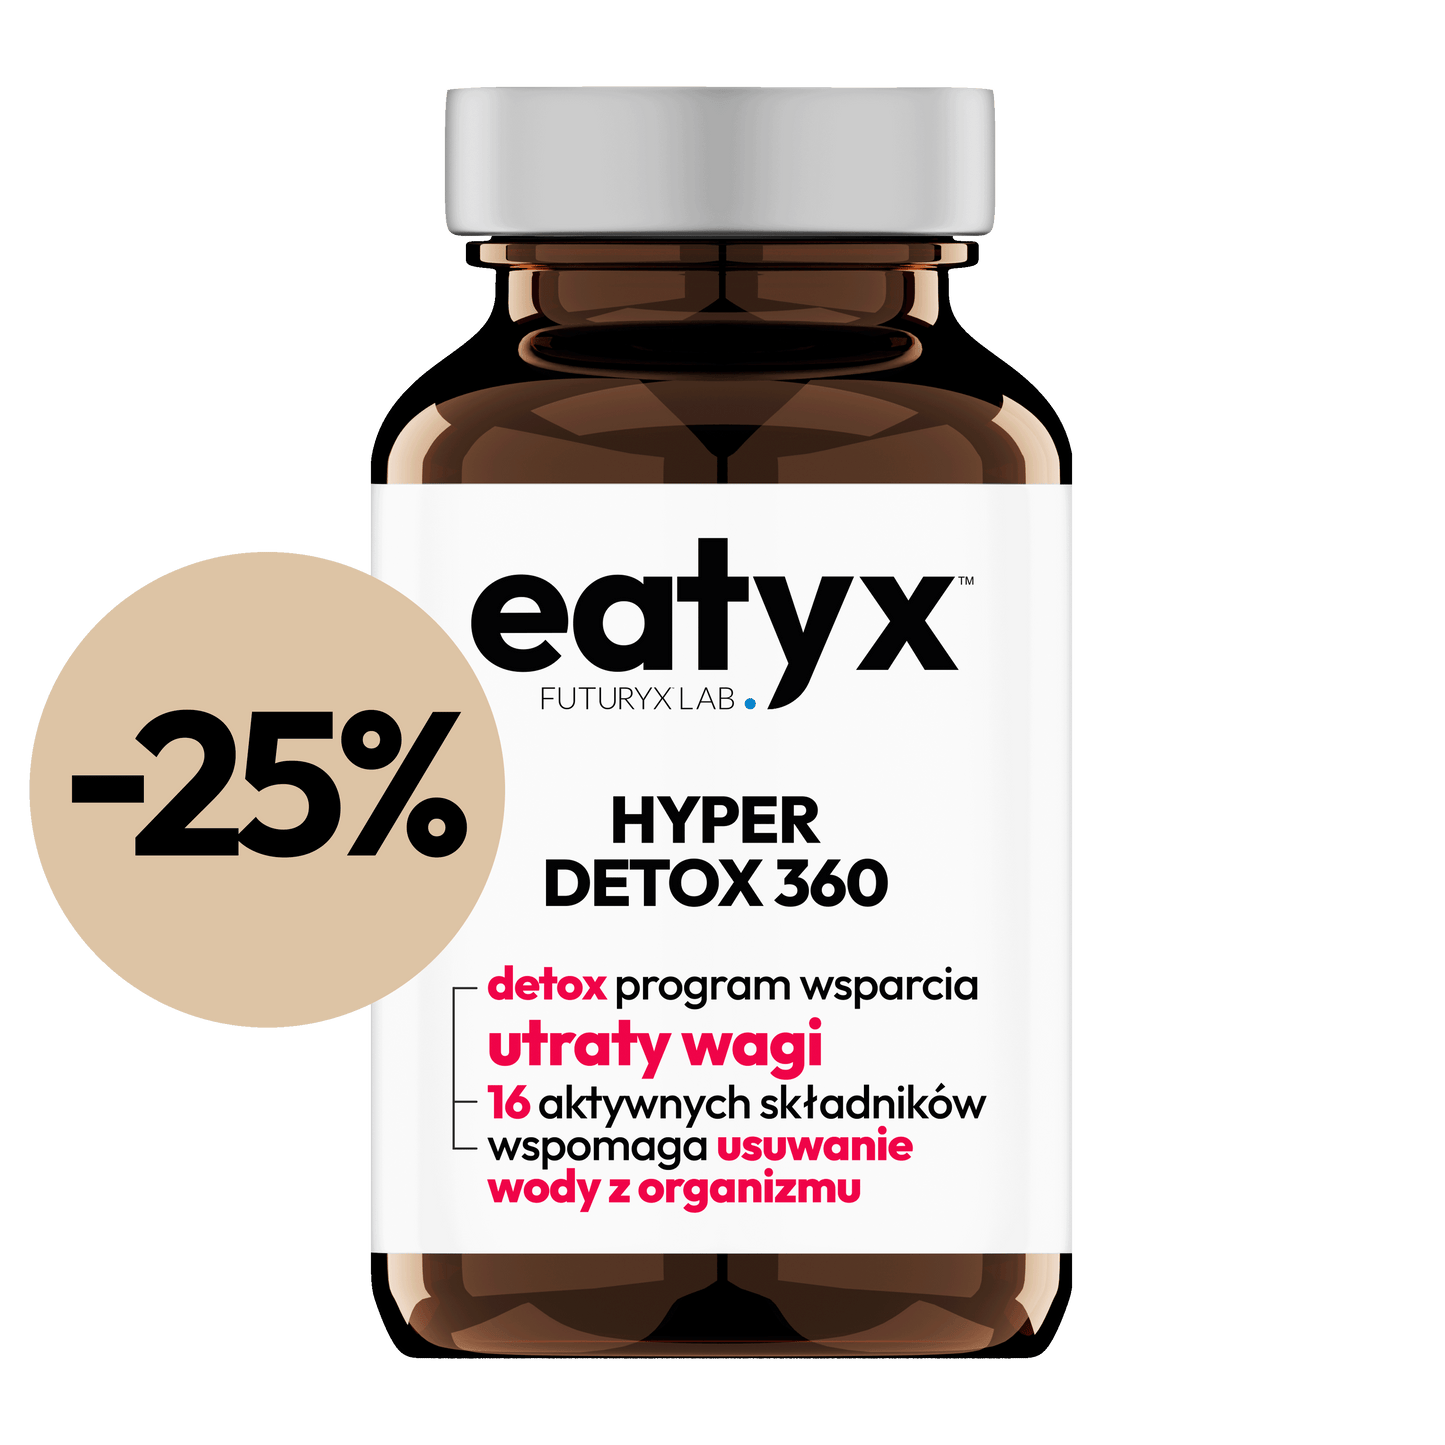 eatyx HYPER DETOX 360